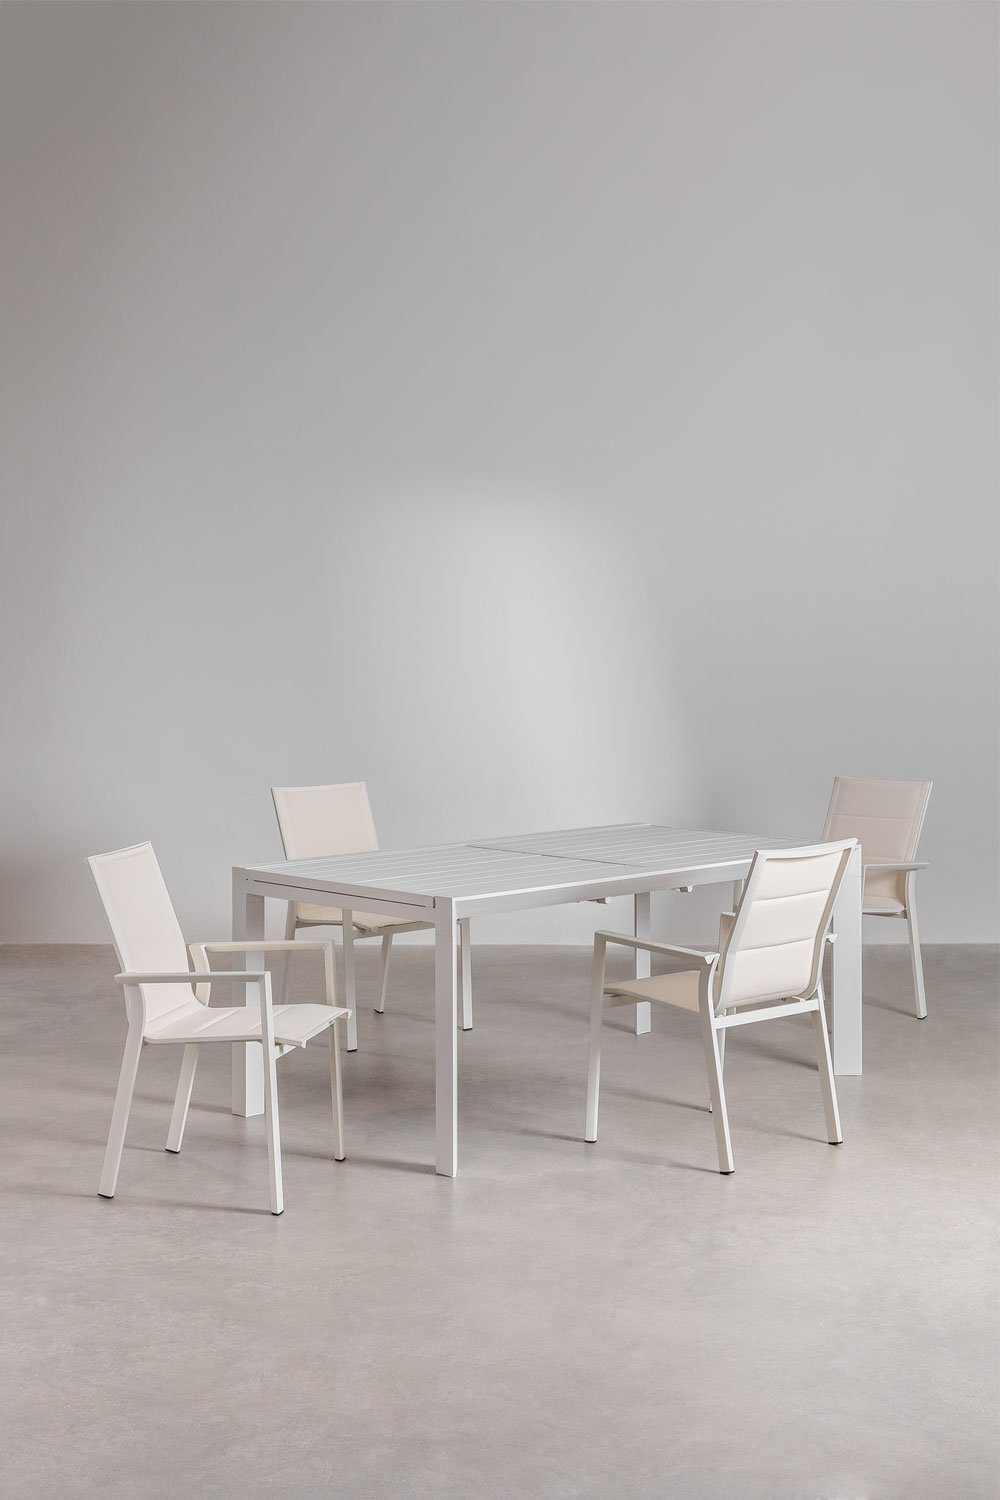 Starmi ausziehbarer rechteckiger Aluminiumtisch (180–240 x 100 cm) und 4 stapelbare Karena-Gartenstühle aus Aluminium, Galeriebild 1